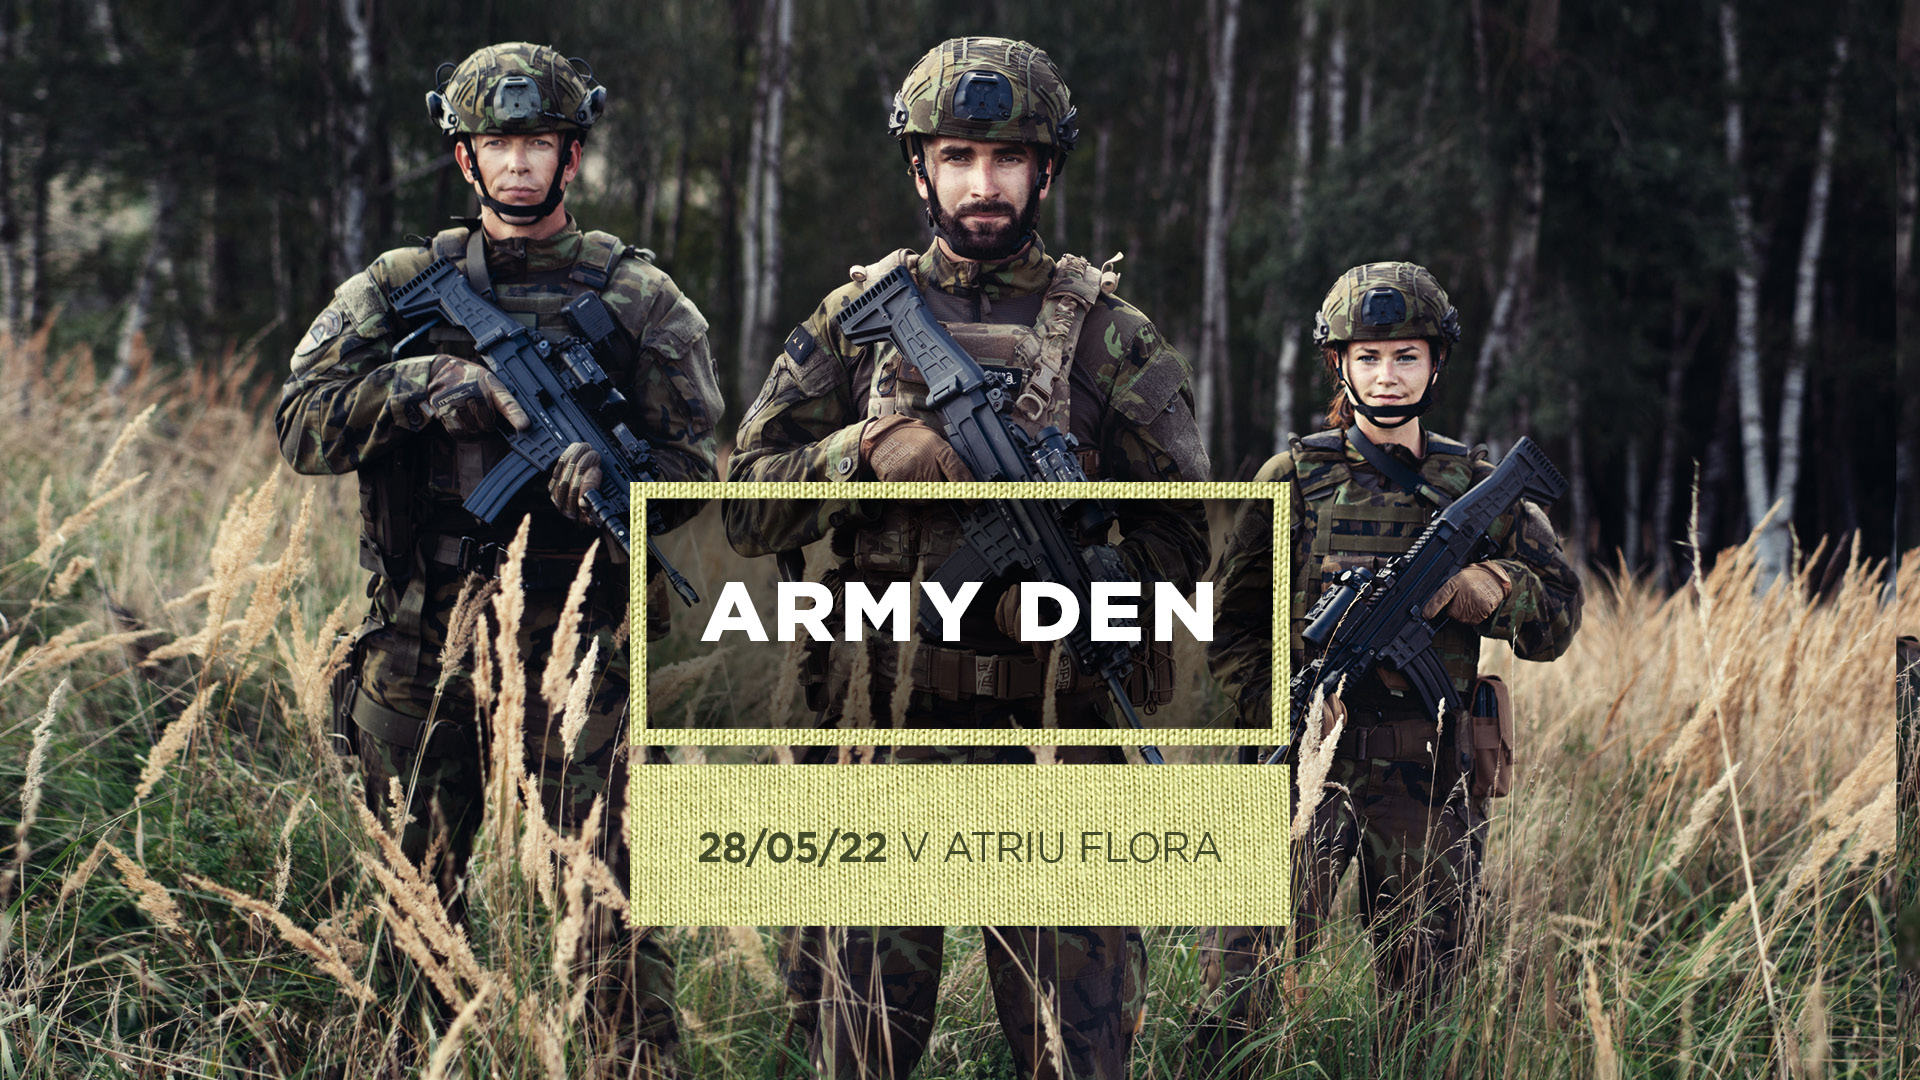 Army den v Atriu Flora - Atrium Flora Praha -Atrium Flora